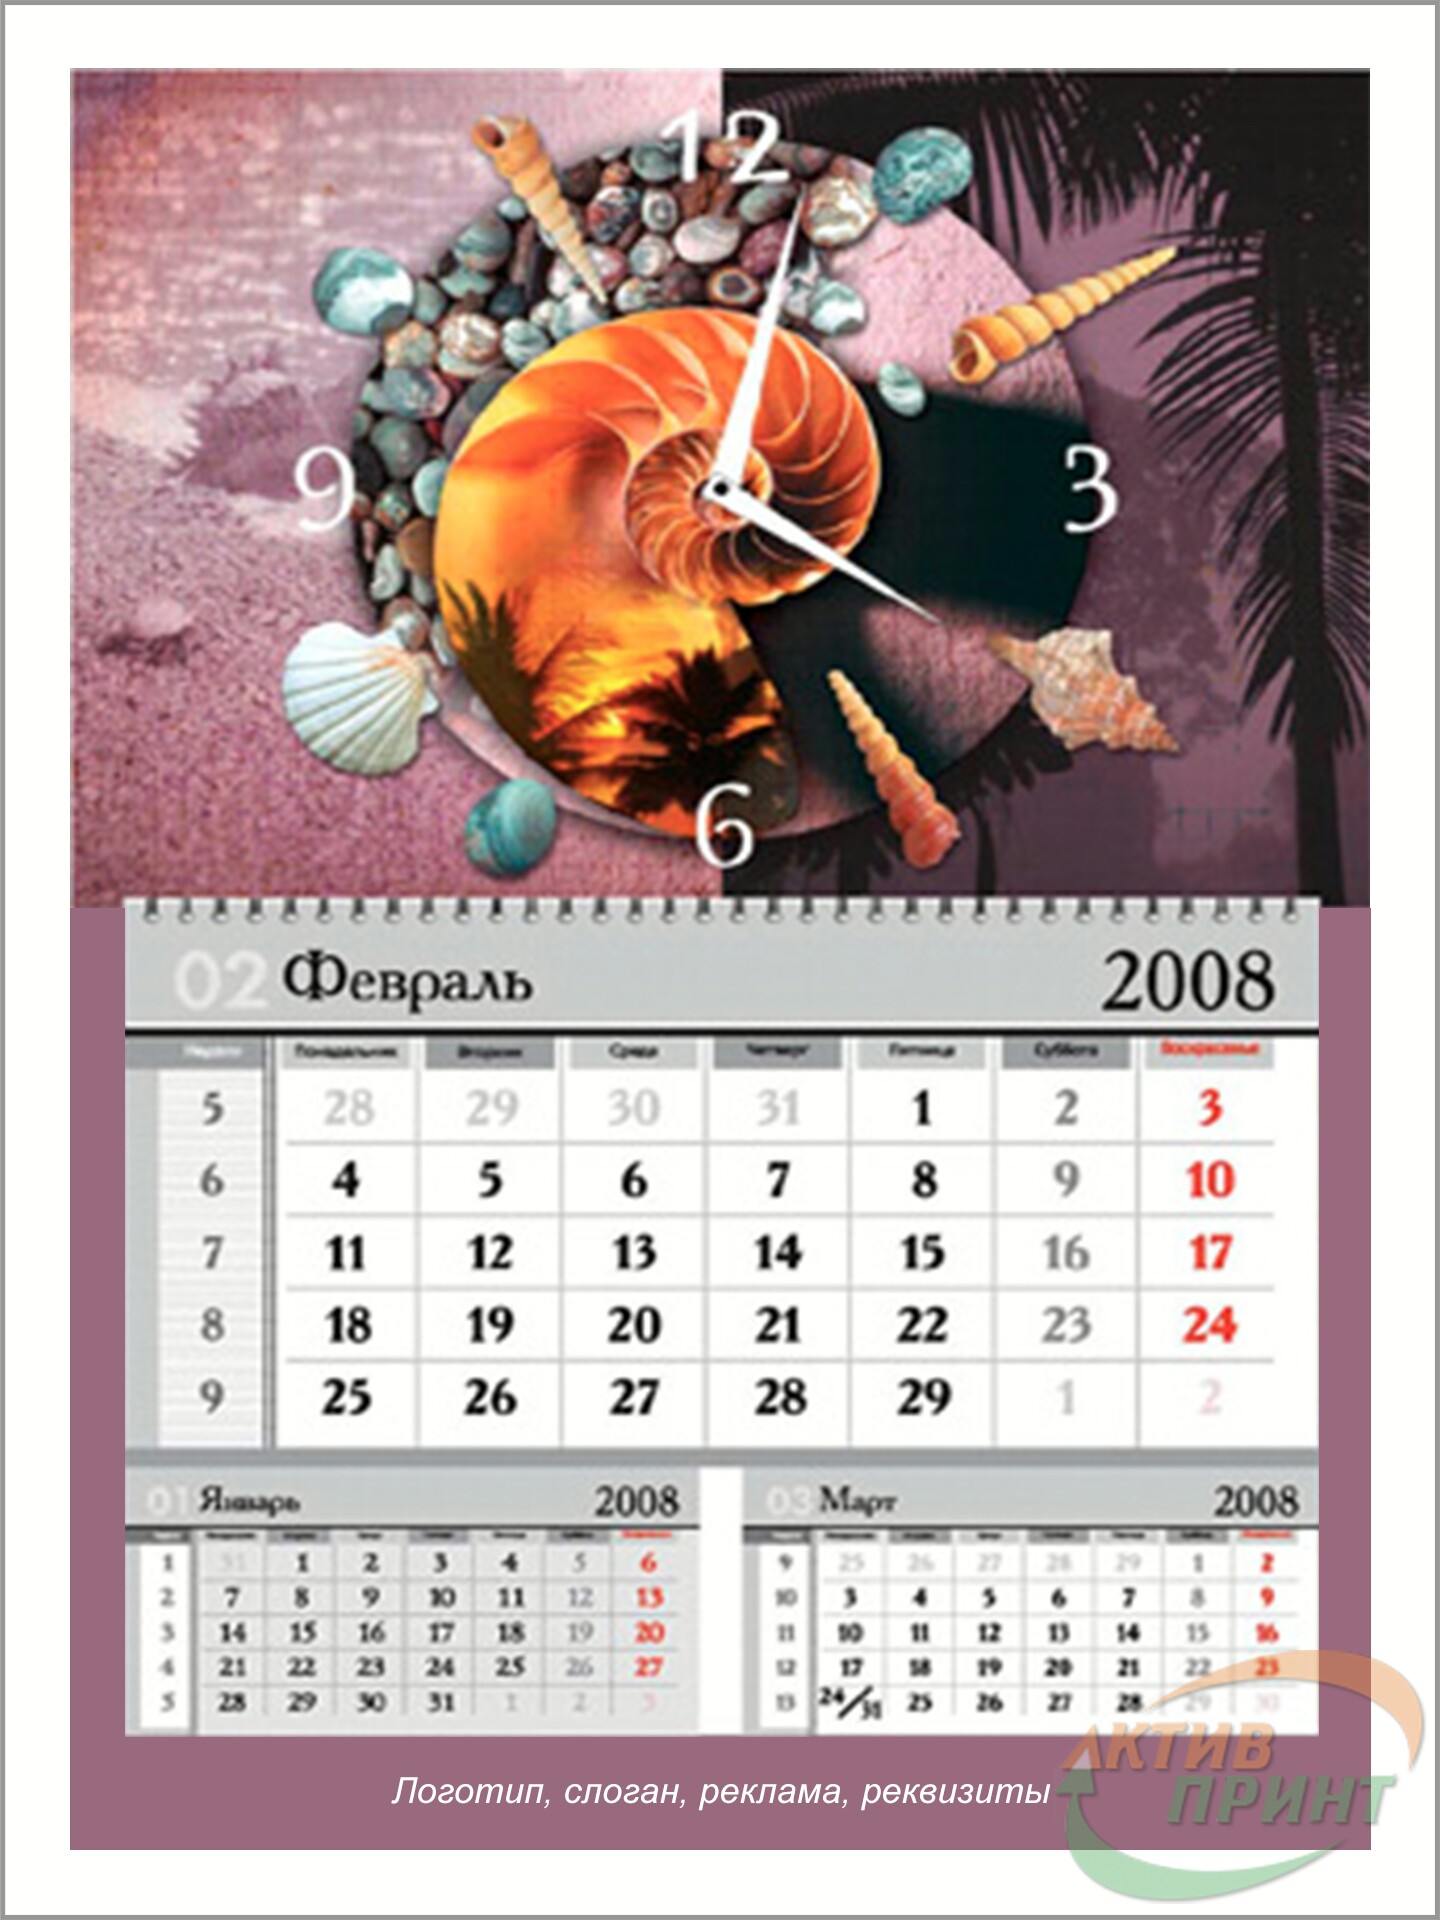 Пример перекидного календаря